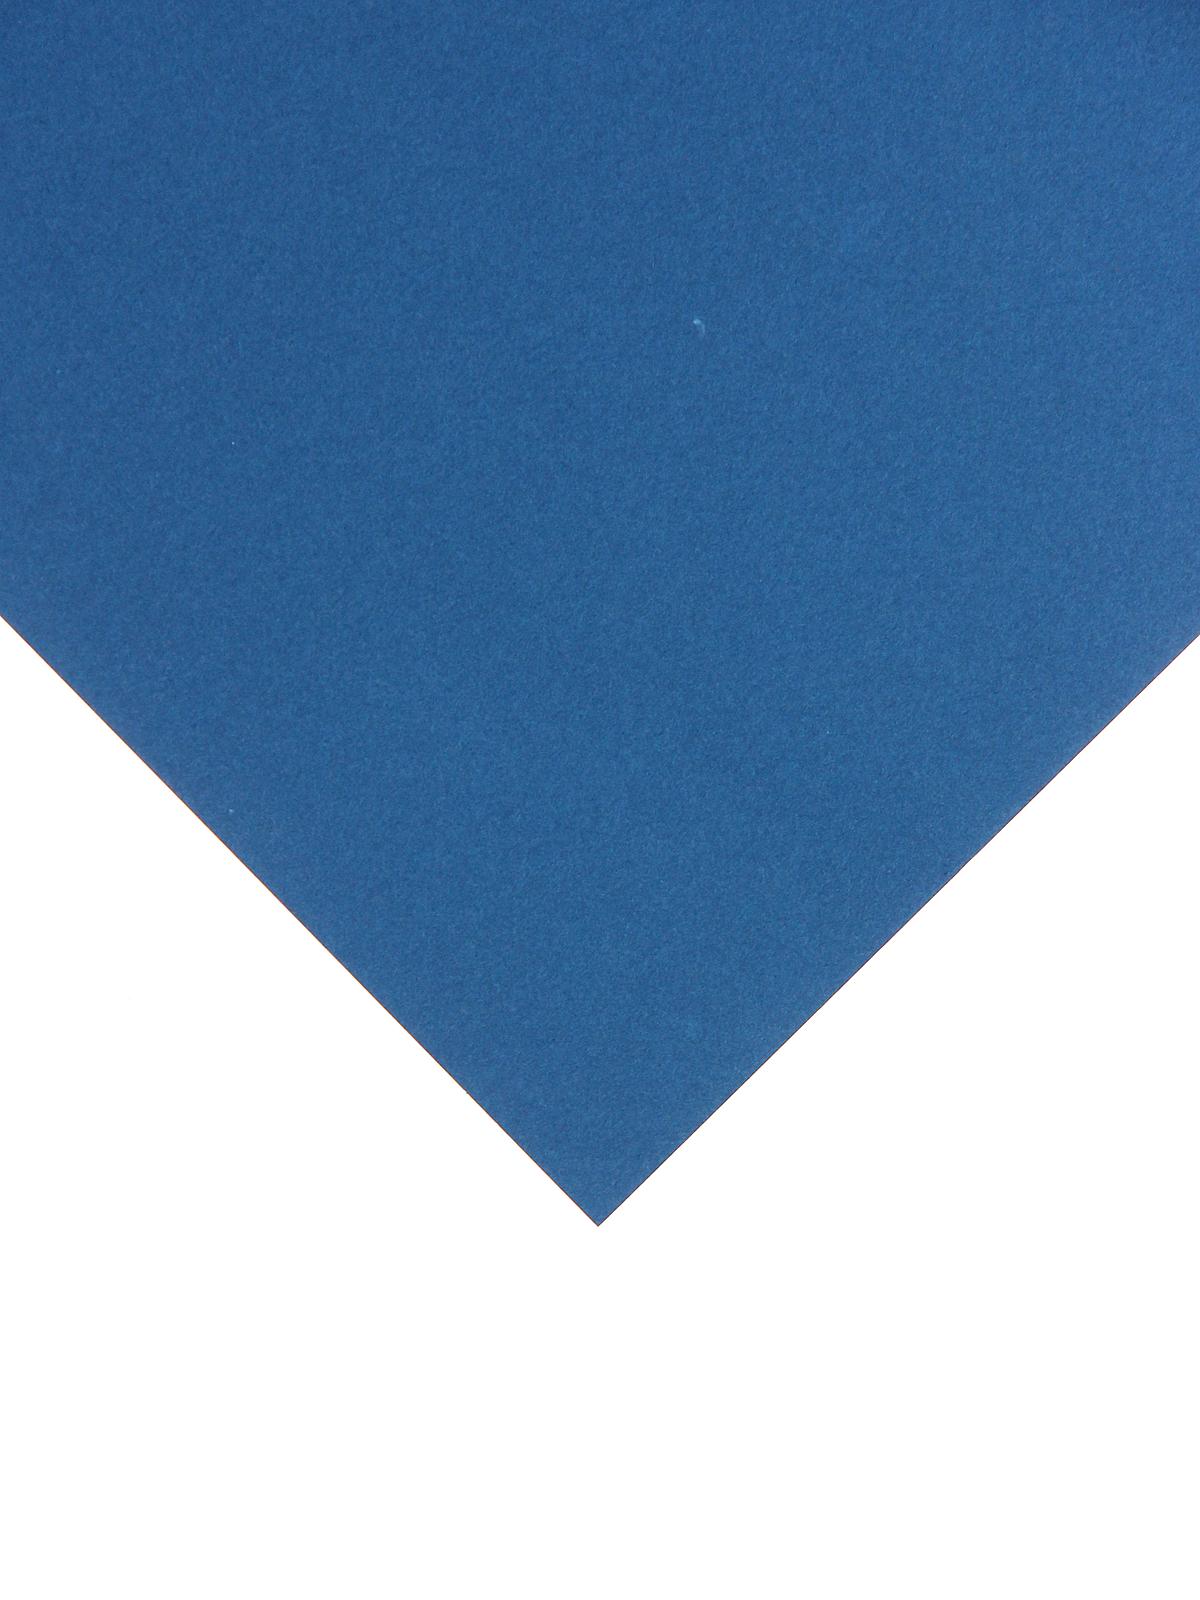 Mi-Teintes Tinted Paper Petrol Blue 8.5 In.x 11 In.